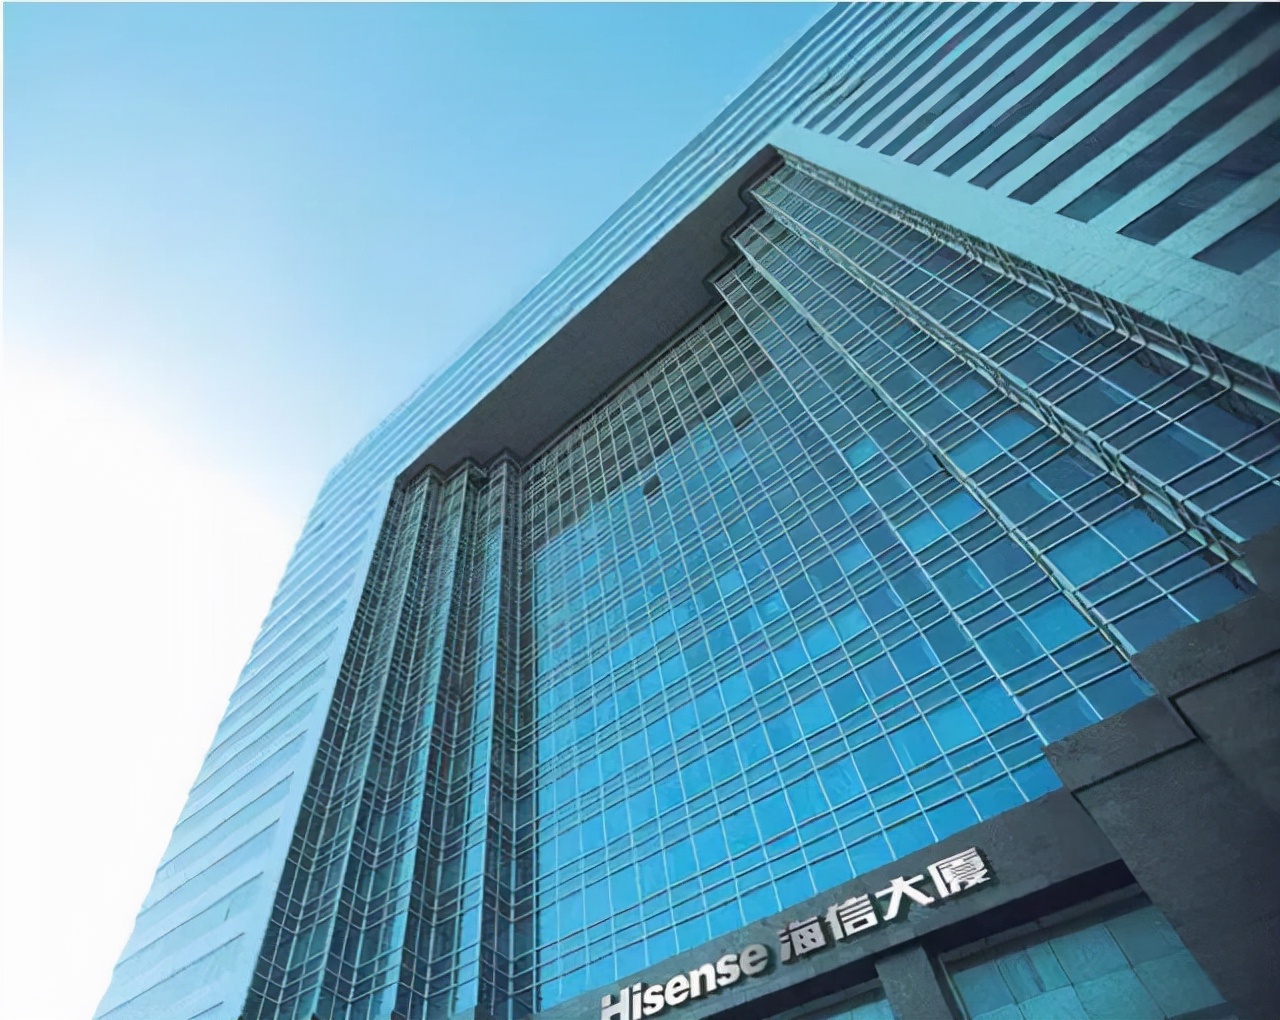 项目名称:长虹科技大厦 项目高度:100米长虹集团总部位于四川省绵阳市